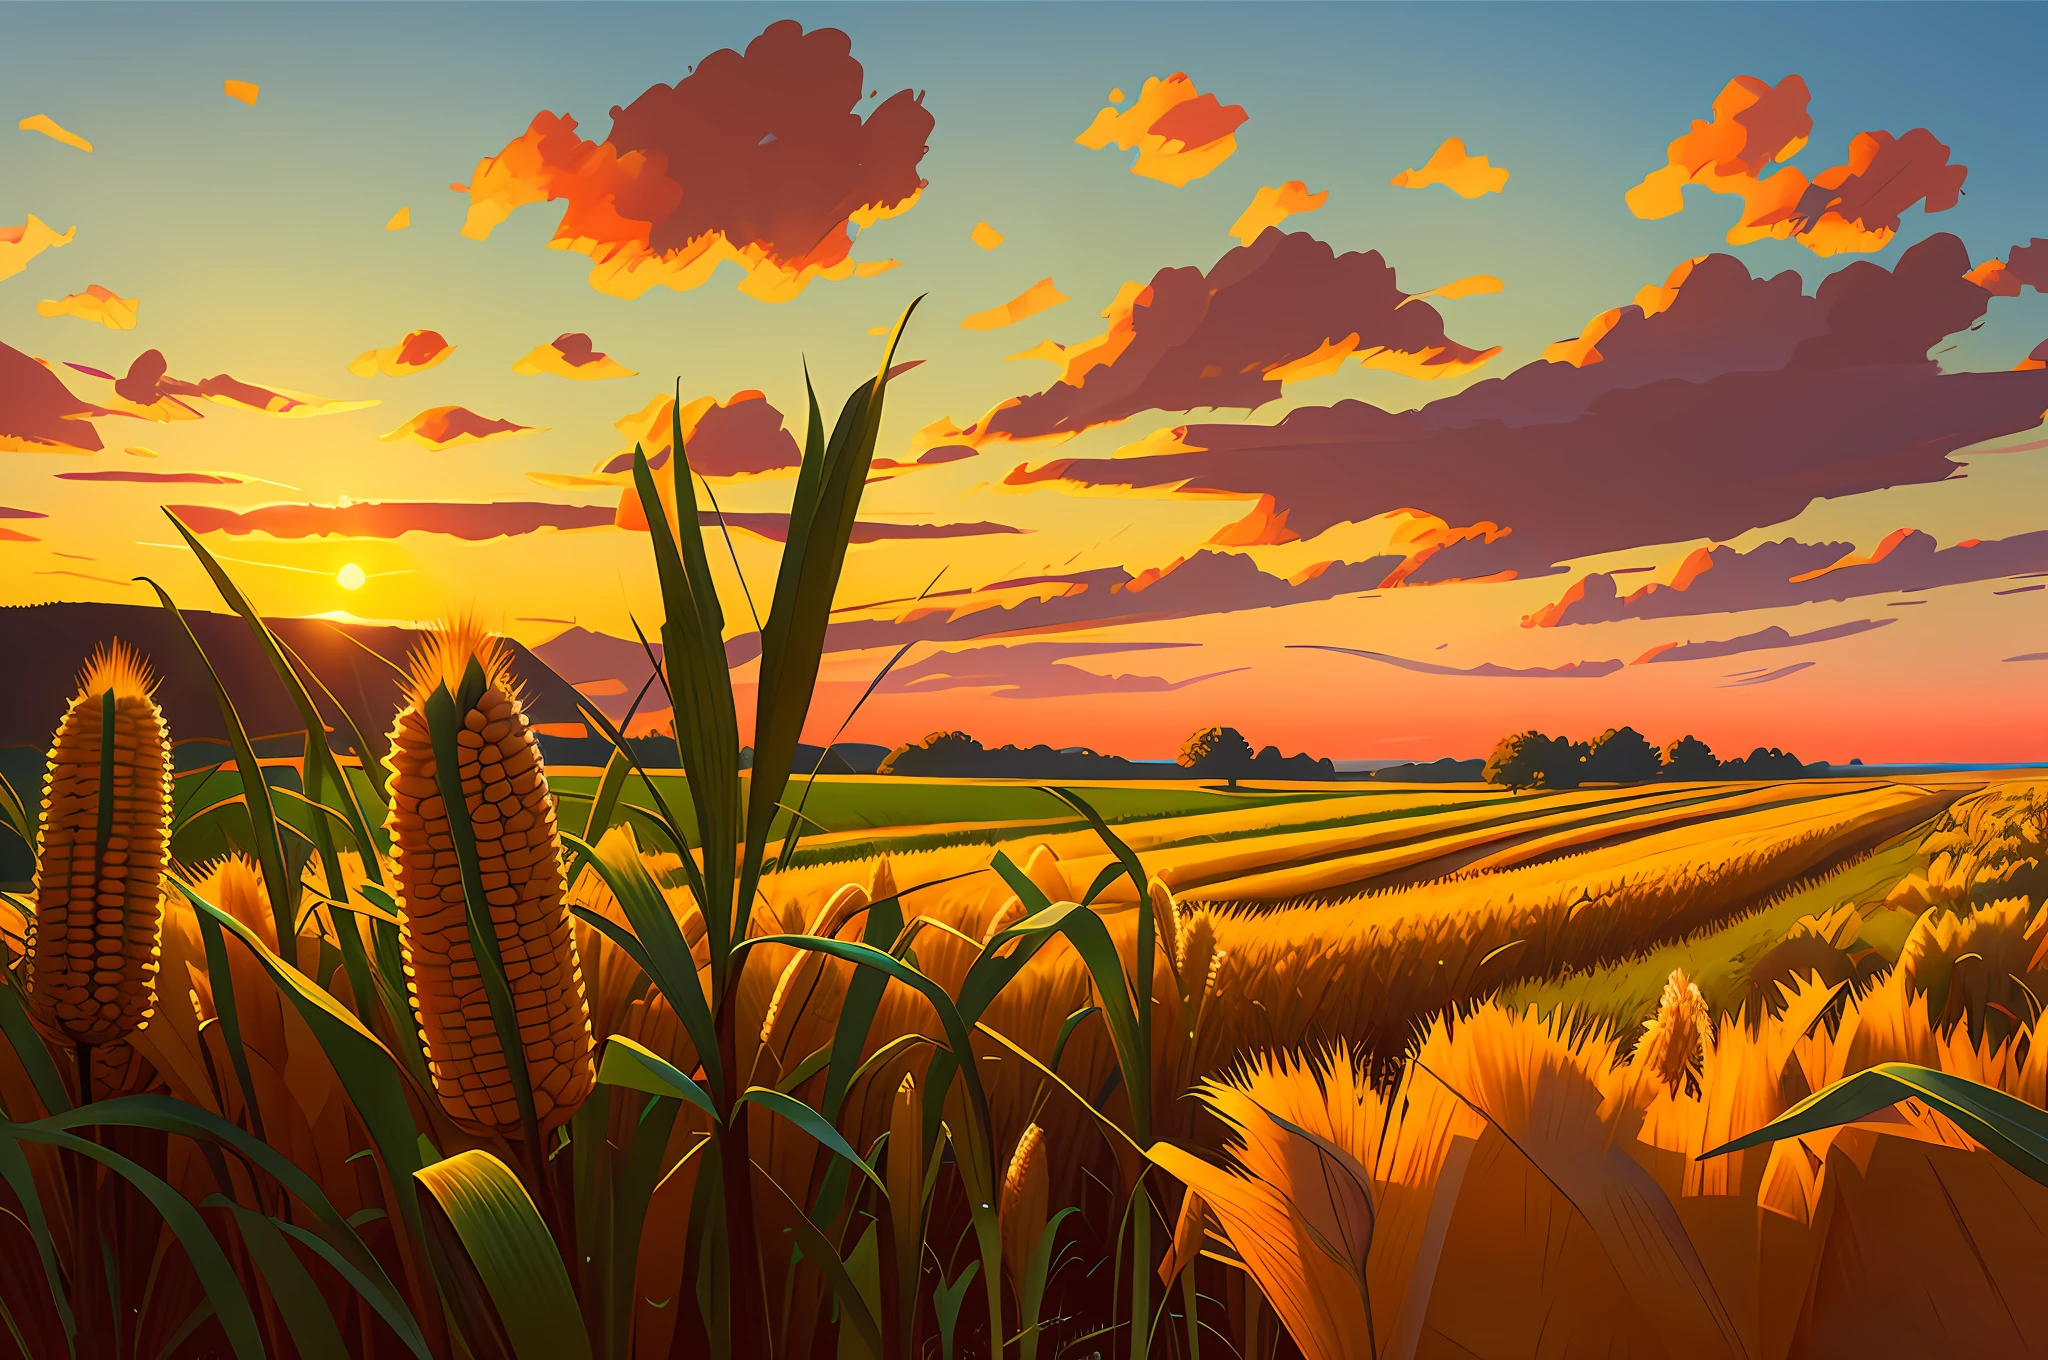 前景中有一些穀物的玉米田, 夏末, 美麗的彩色天空, 超現實的數位概念藝術與前衛的粗筆觸. 愛德華霍普與皮克斯風格的概念藝術.